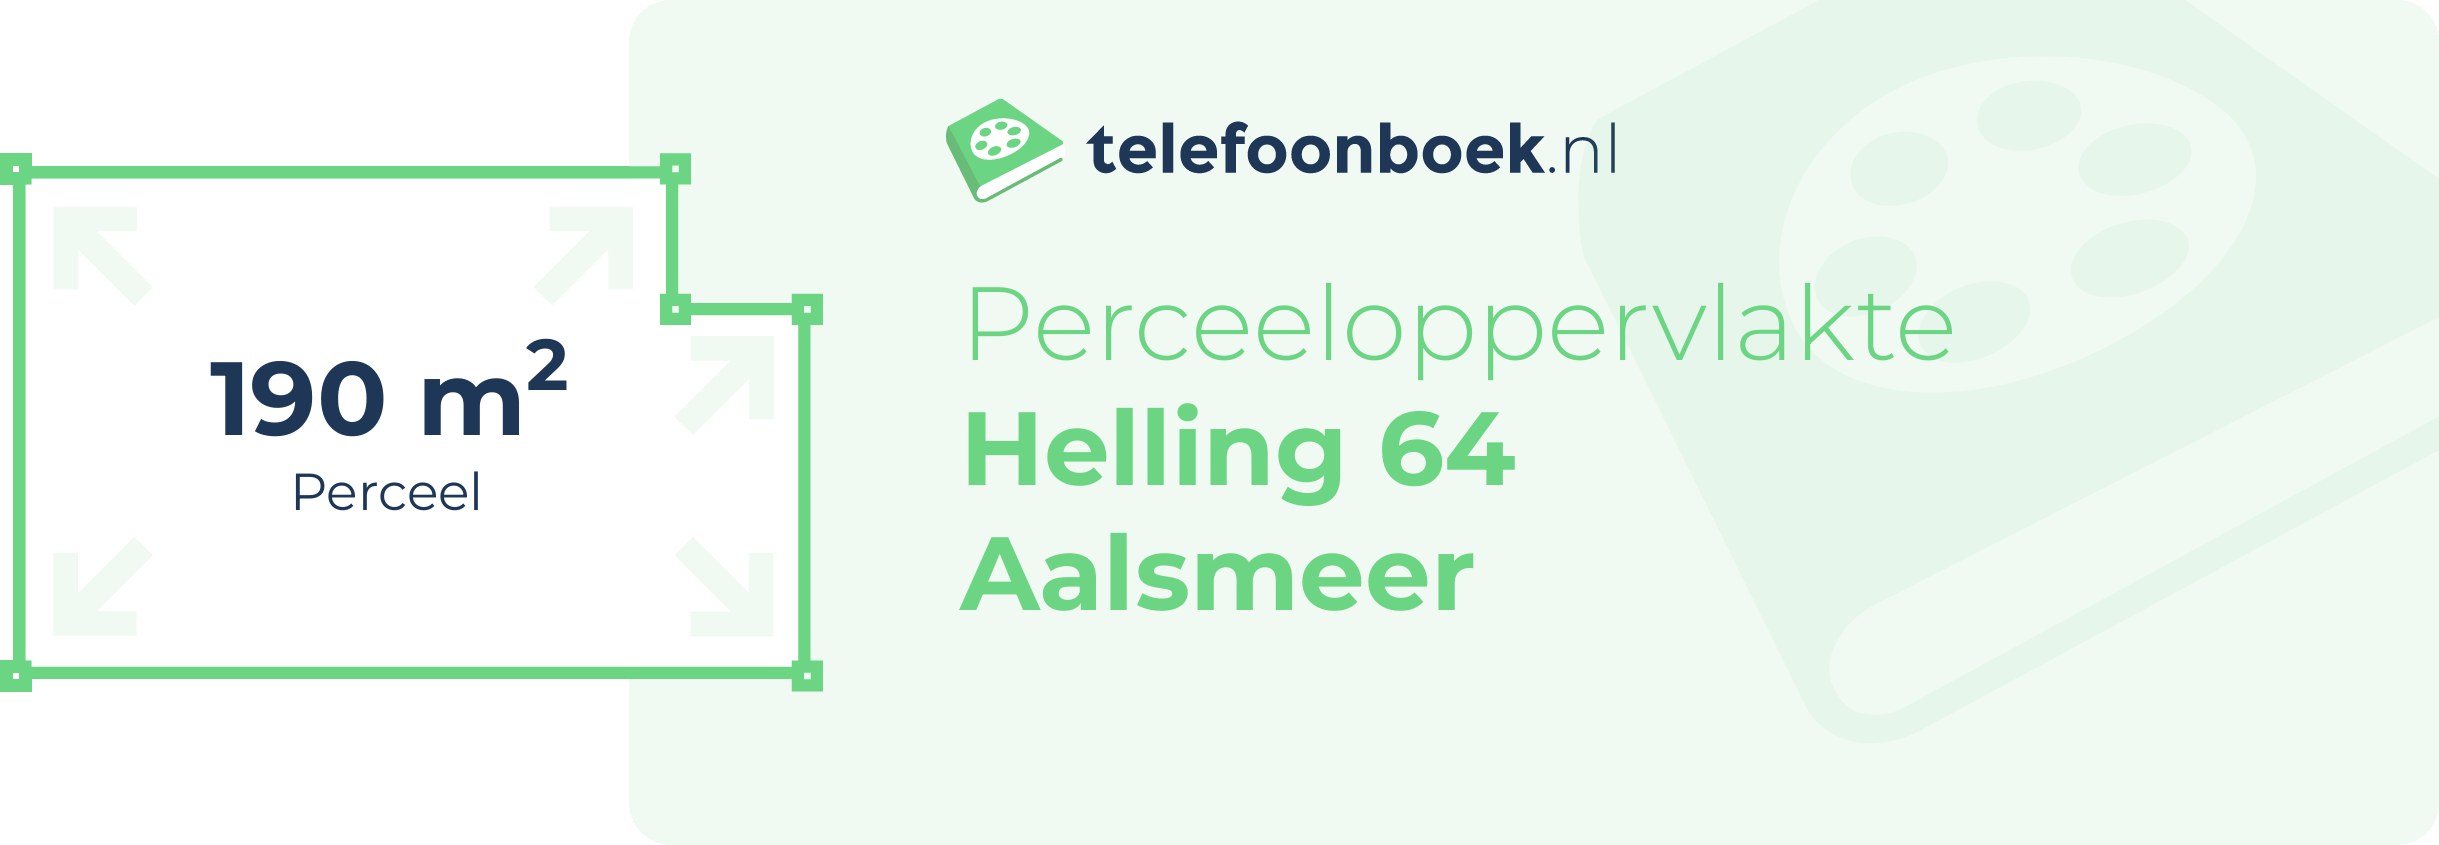 Perceeloppervlakte Helling 64 Aalsmeer